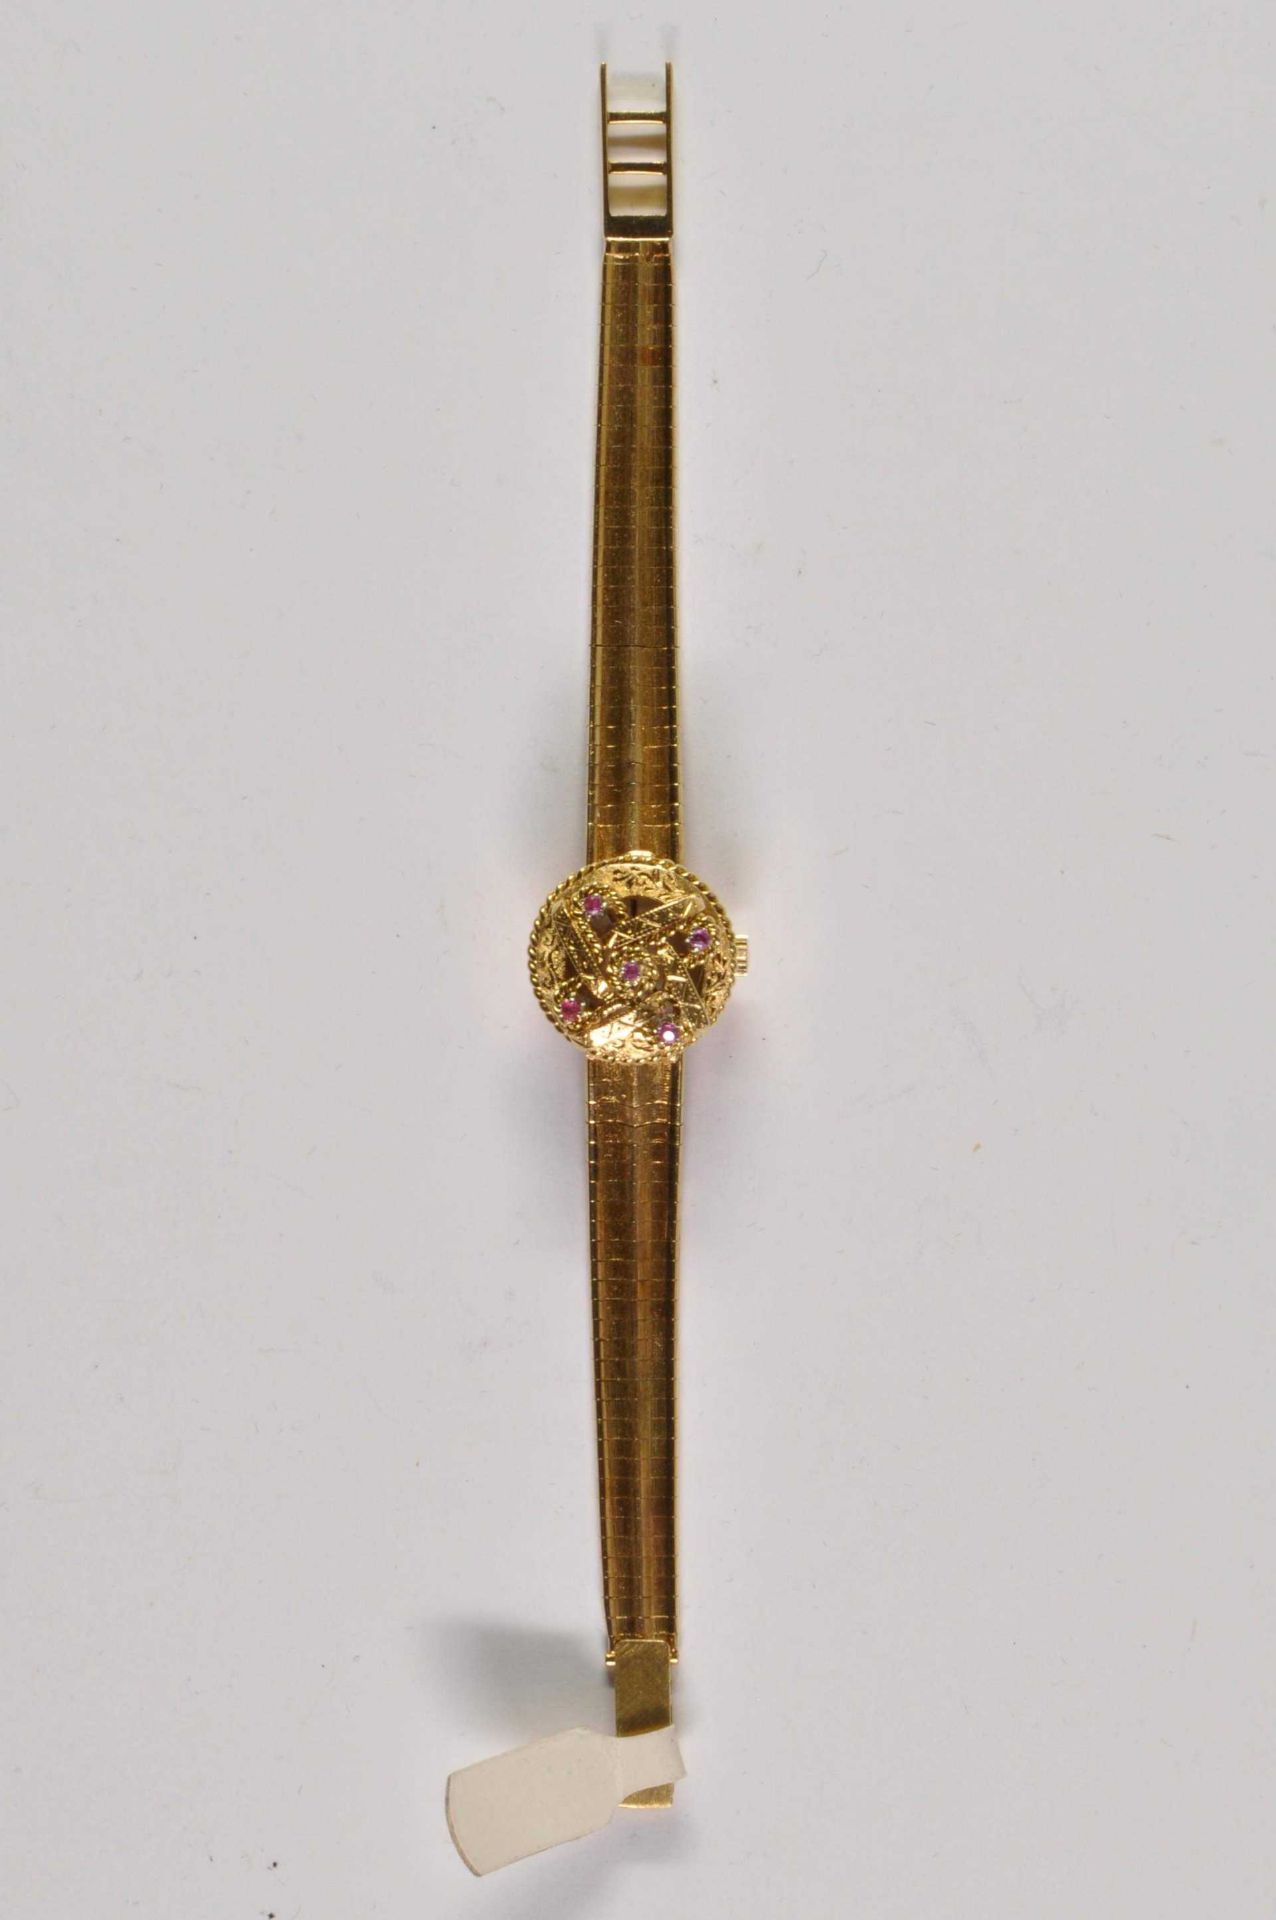 Felicitas Neuchatel Damen Armbanduhr. Ca. 20mm, Formuhr, 750er Gelbgold, Handaufzug. Silberfarbenes - Bild 2 aus 4